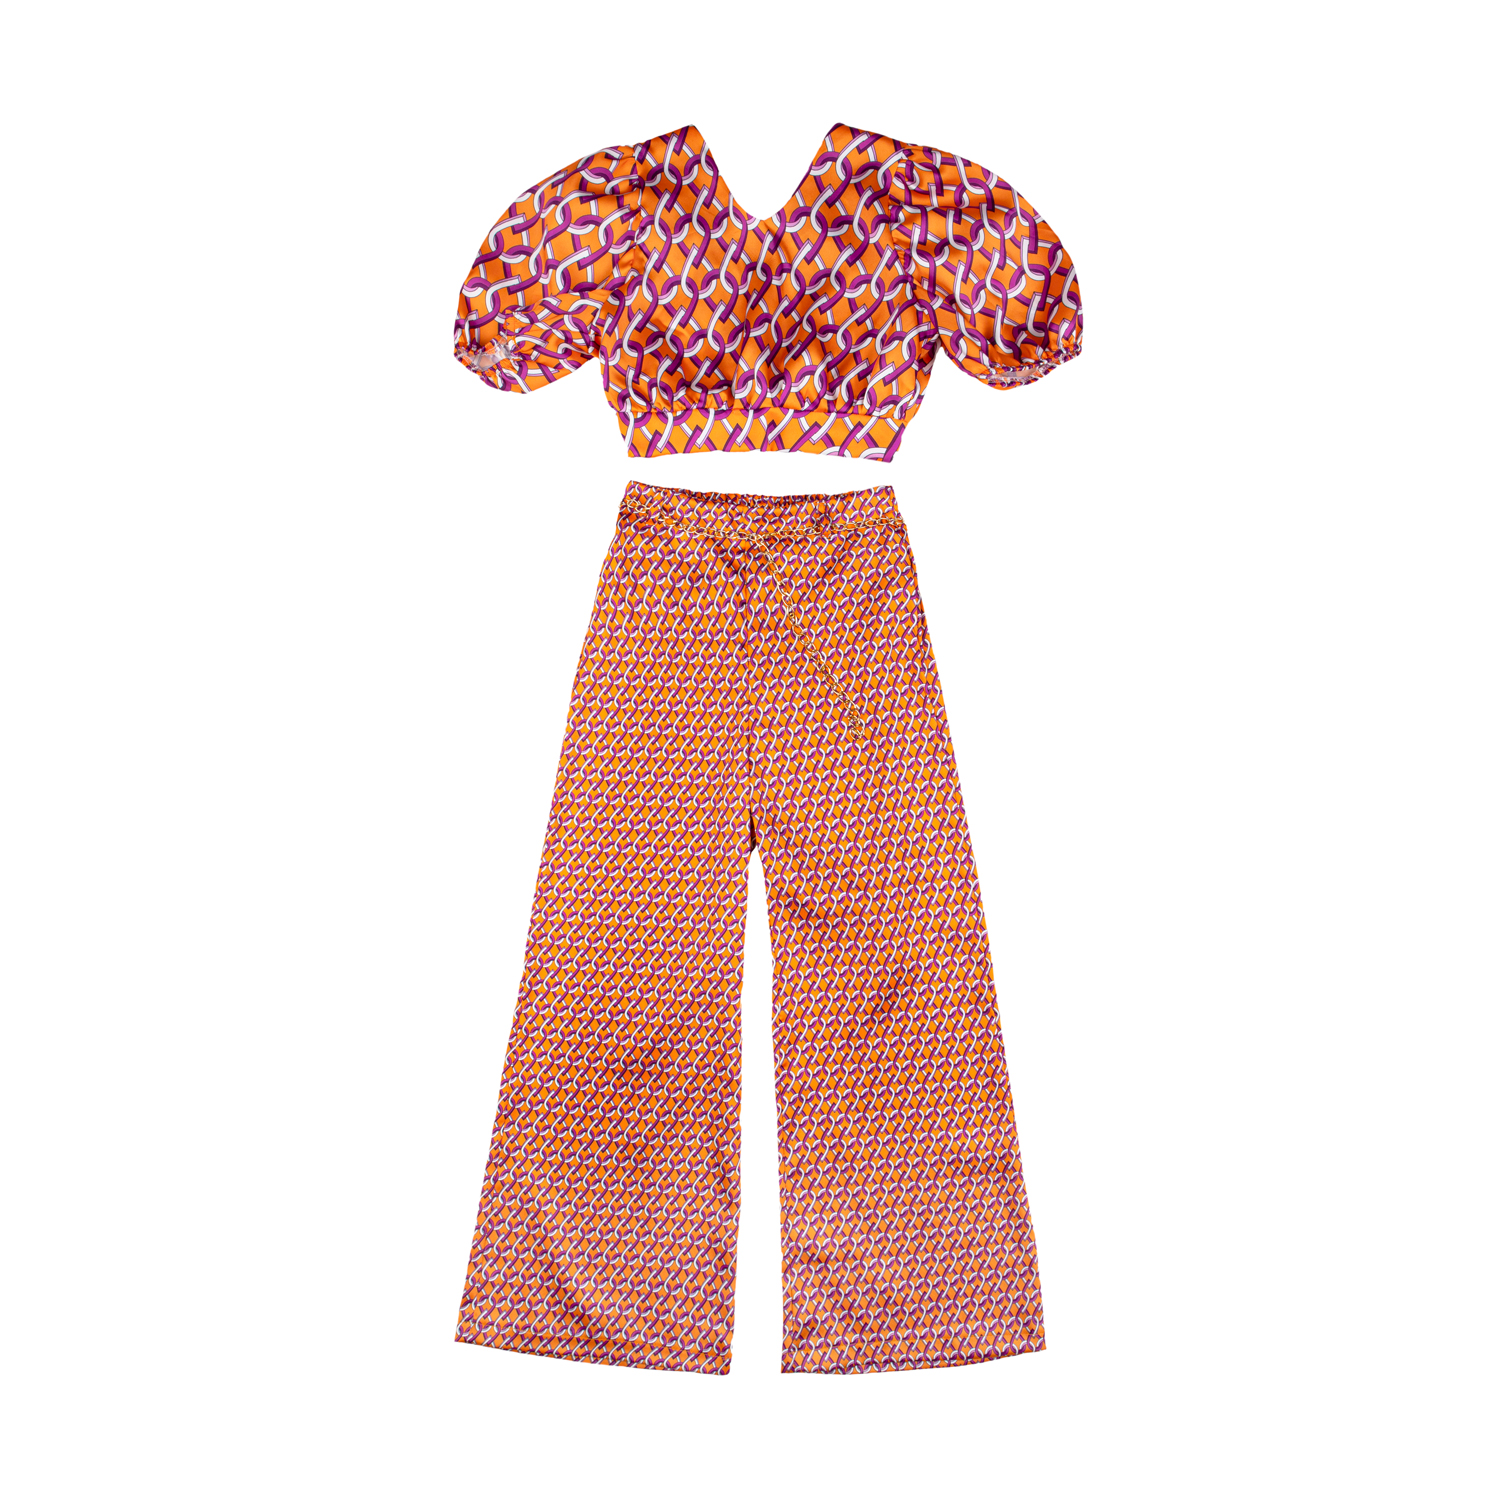 Σετ top παντελόνα για κορίτσι καλοκαιρινό σε πορτοκαλί χρώμα -31.7002P 77540